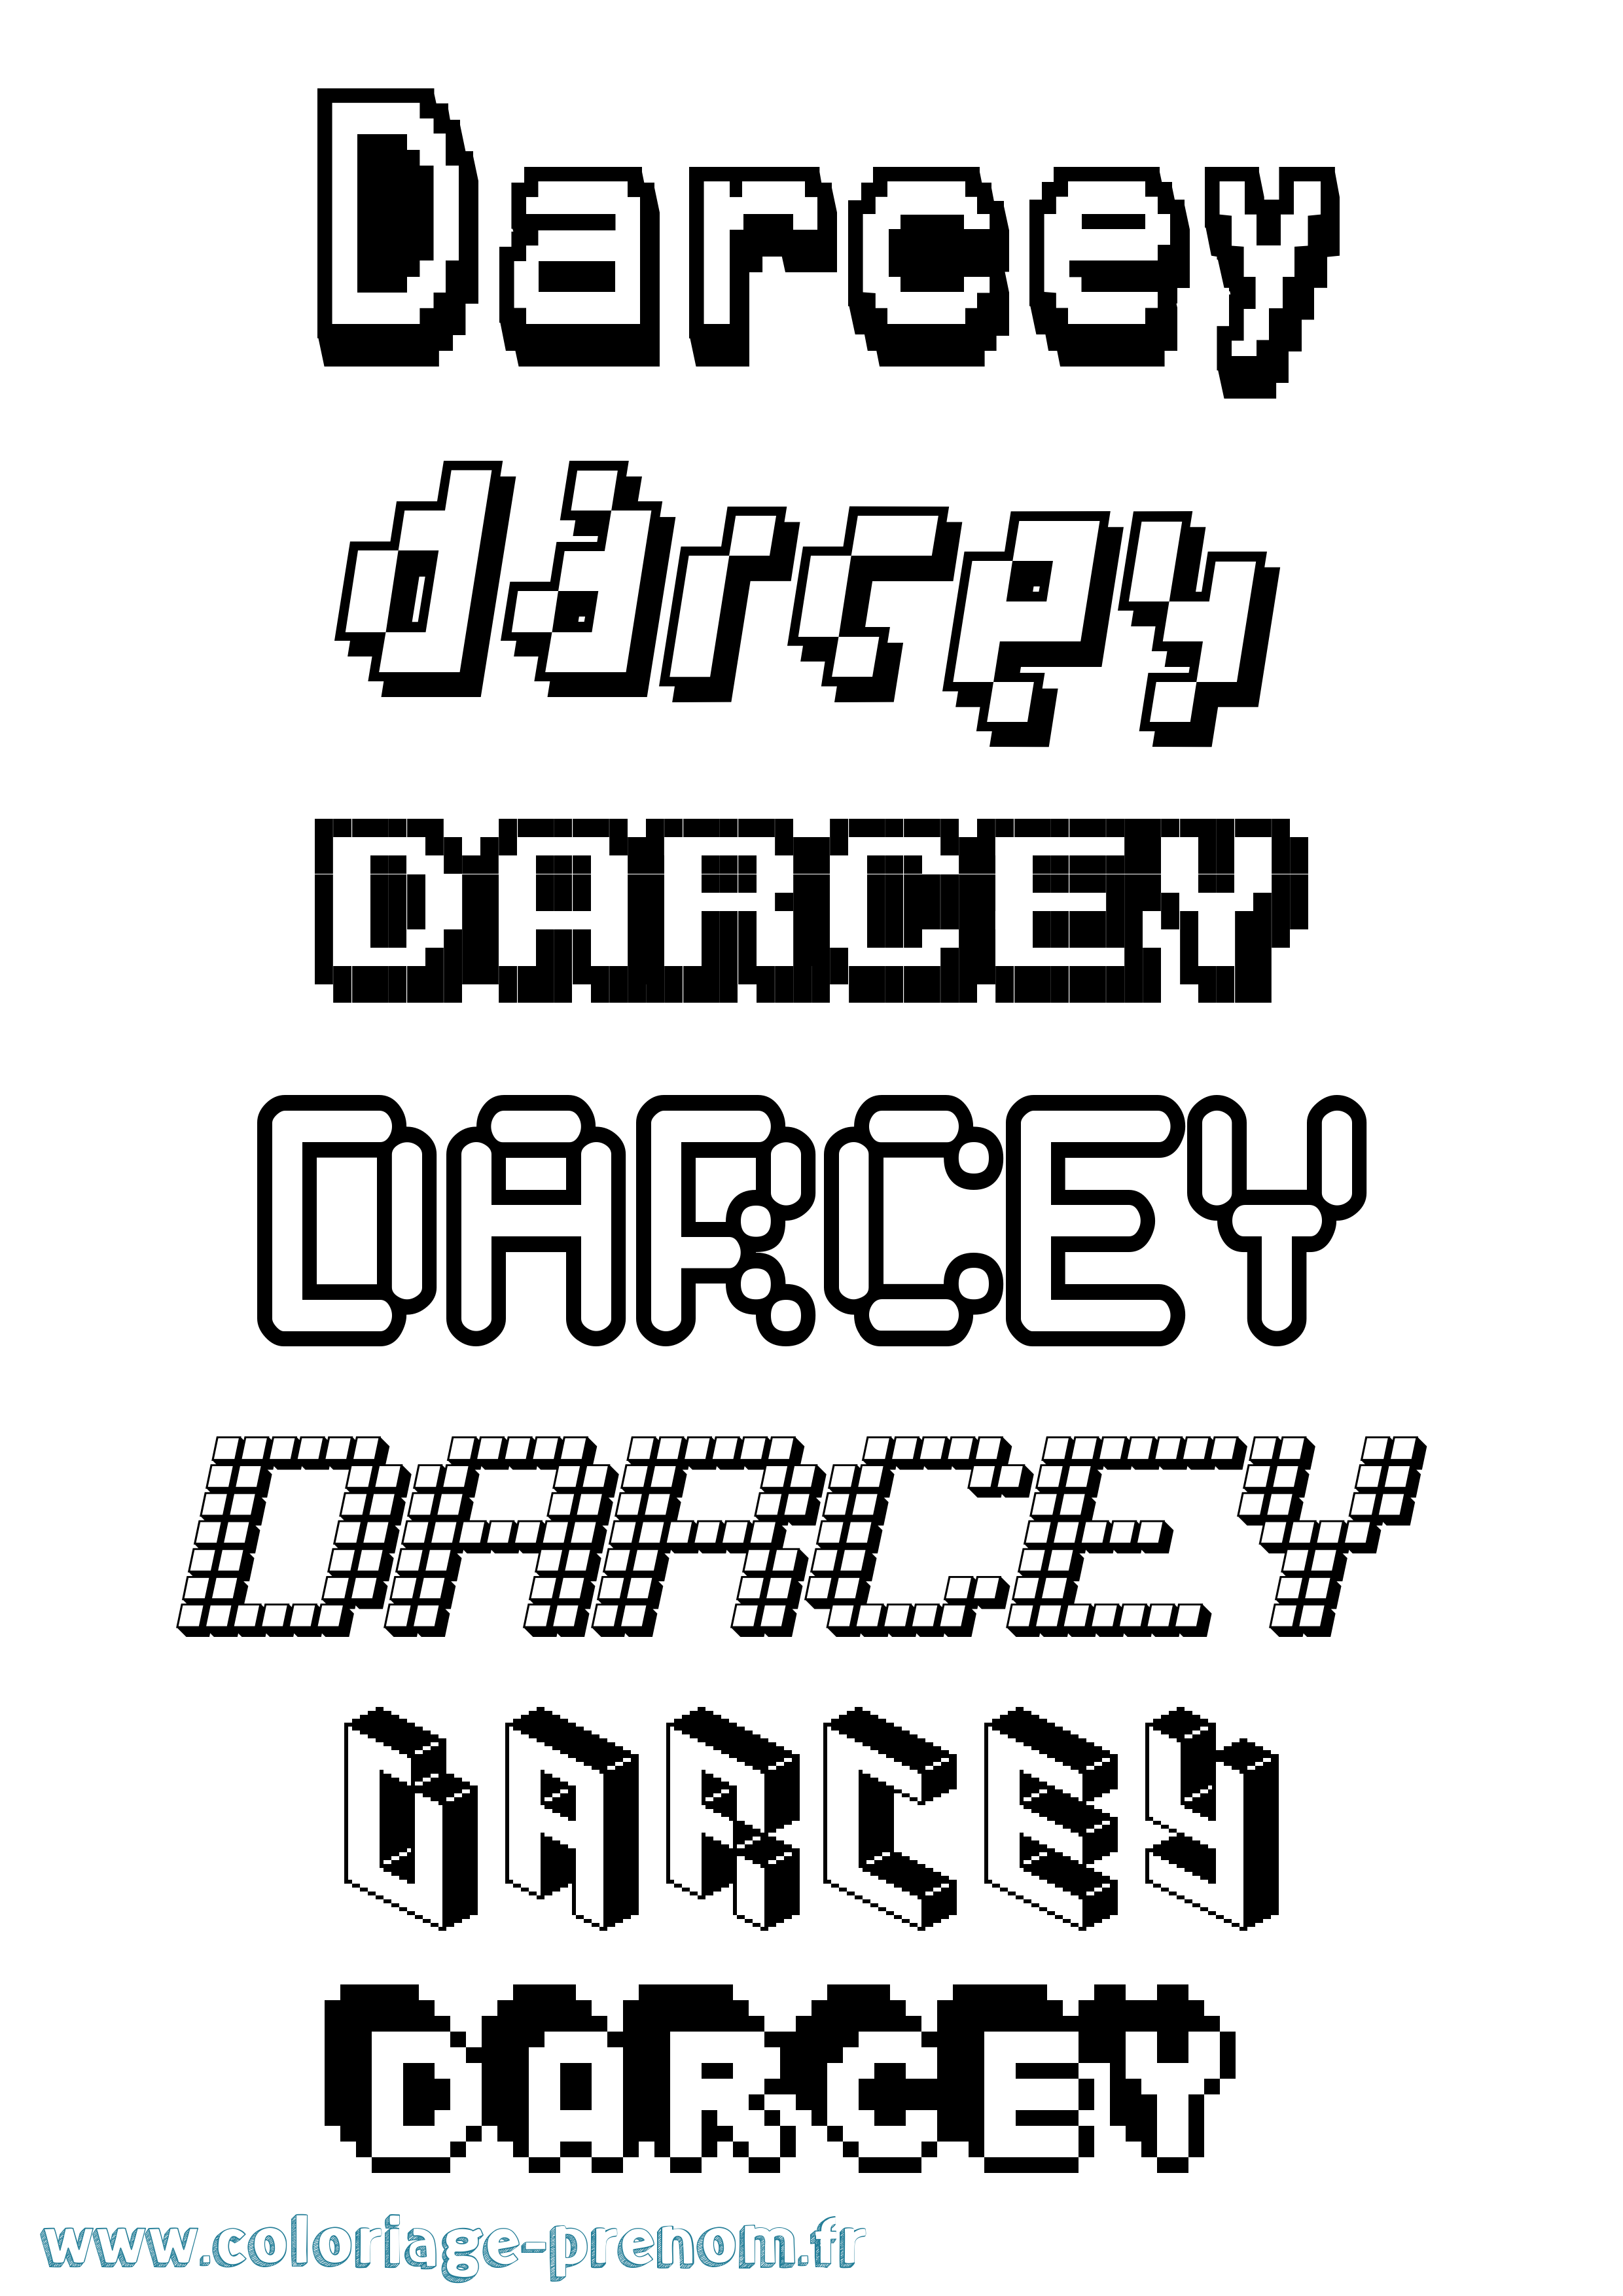 Coloriage prénom Darcey Pixel